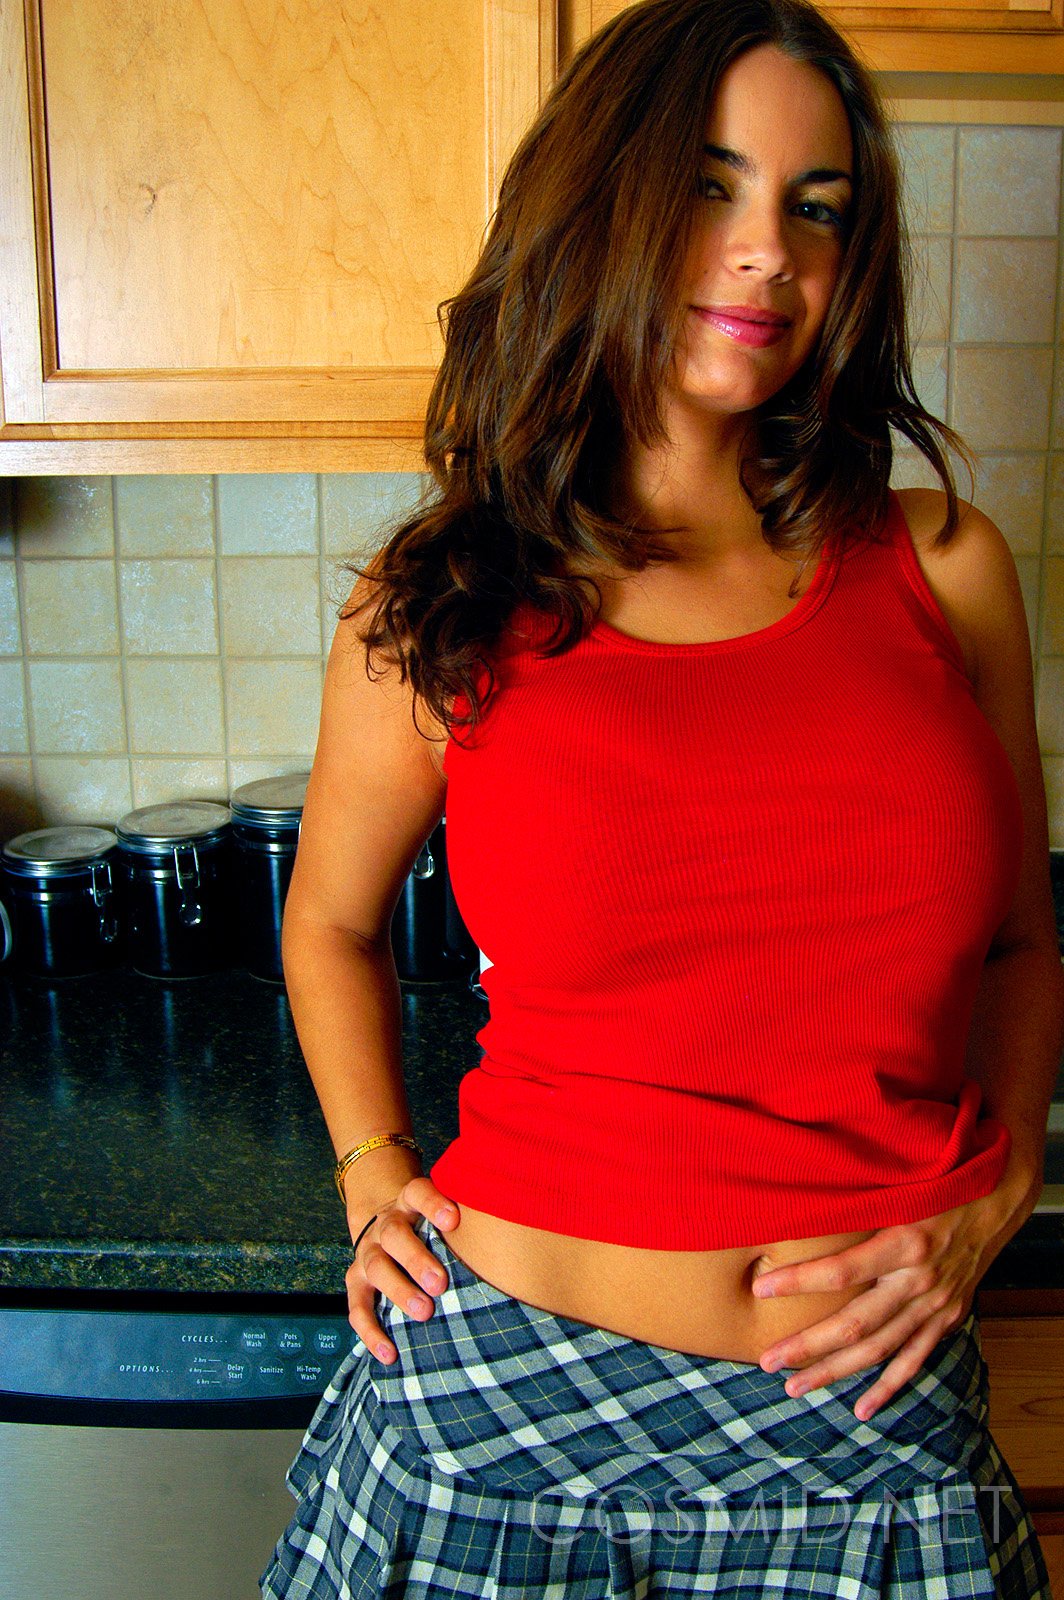 wpid-red-shirt-in-the-kitchen4.jpg